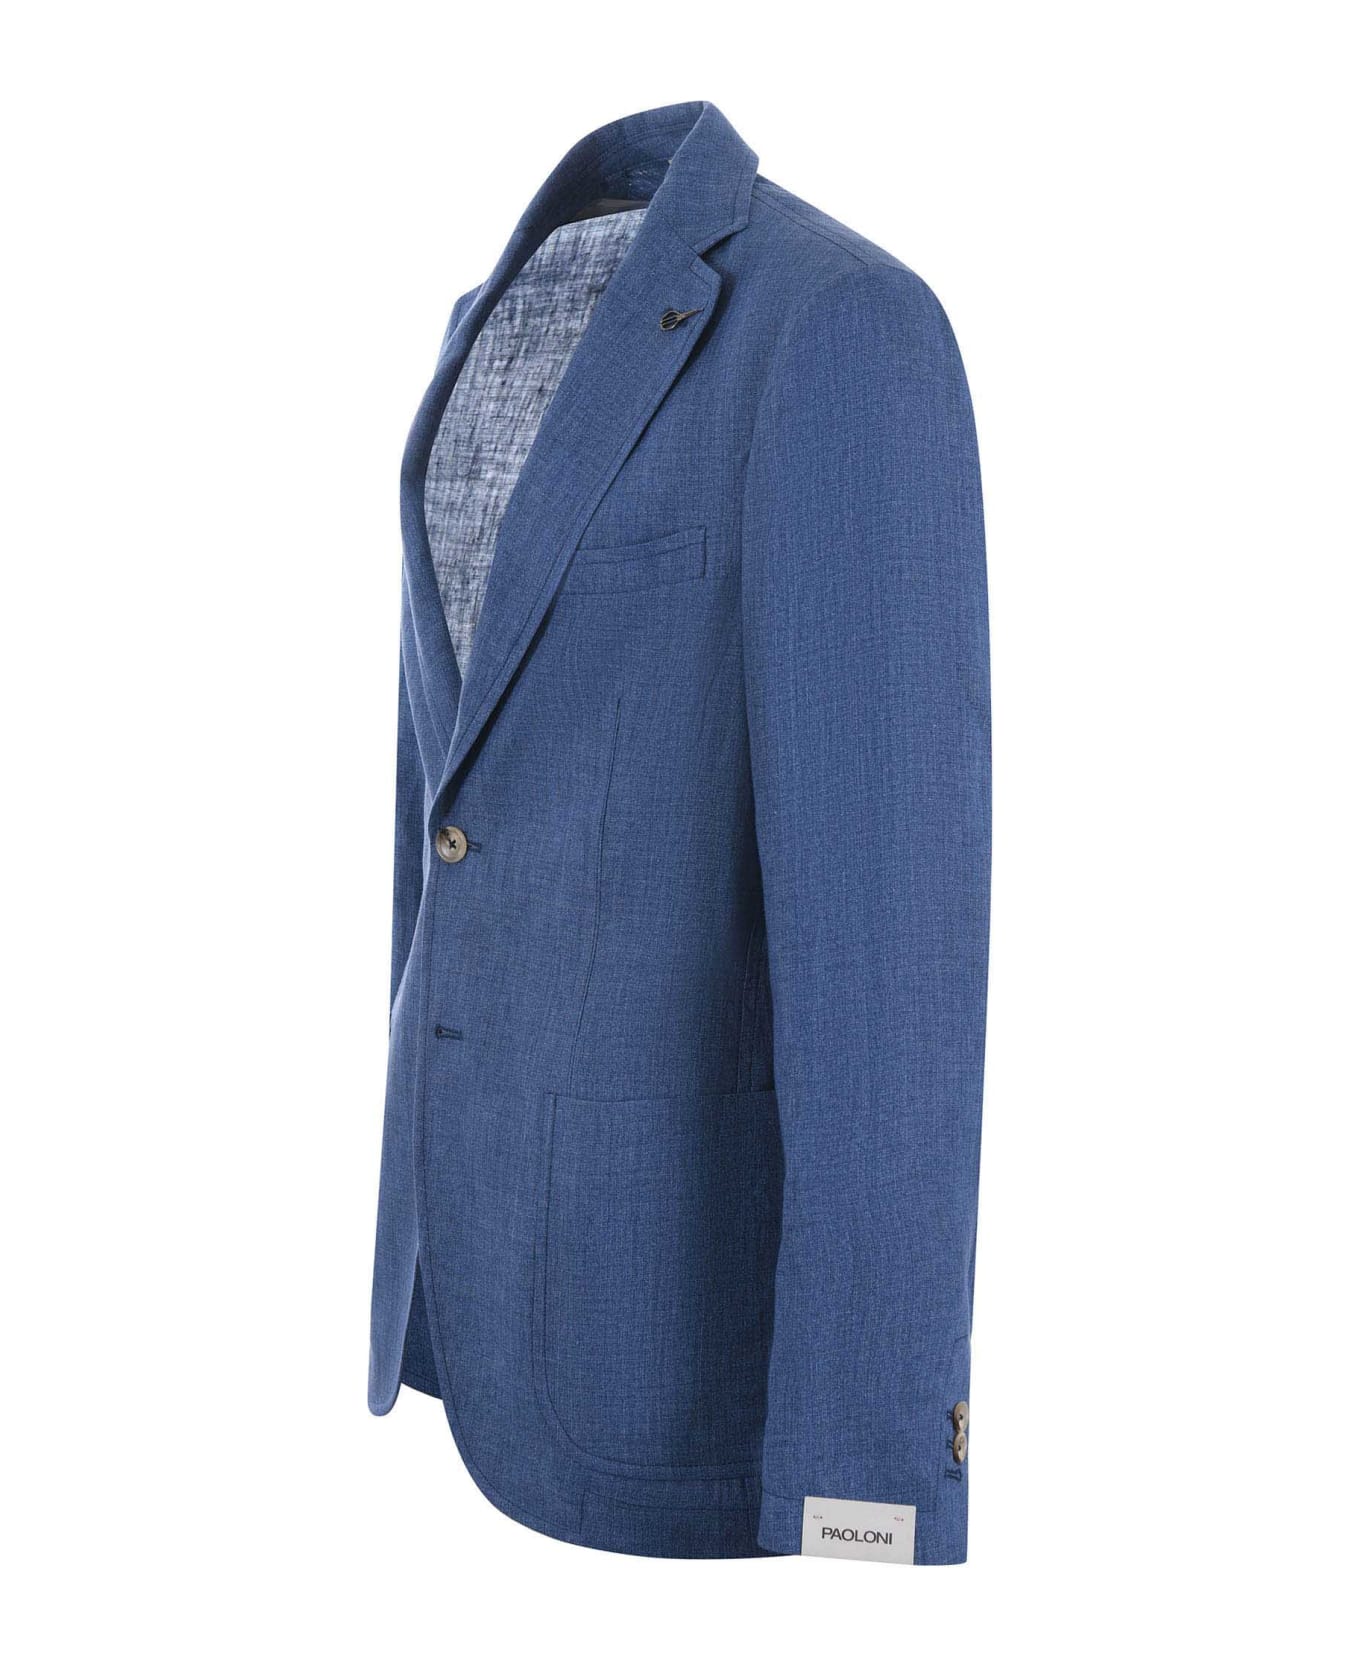 Paoloni Jacket - Blu